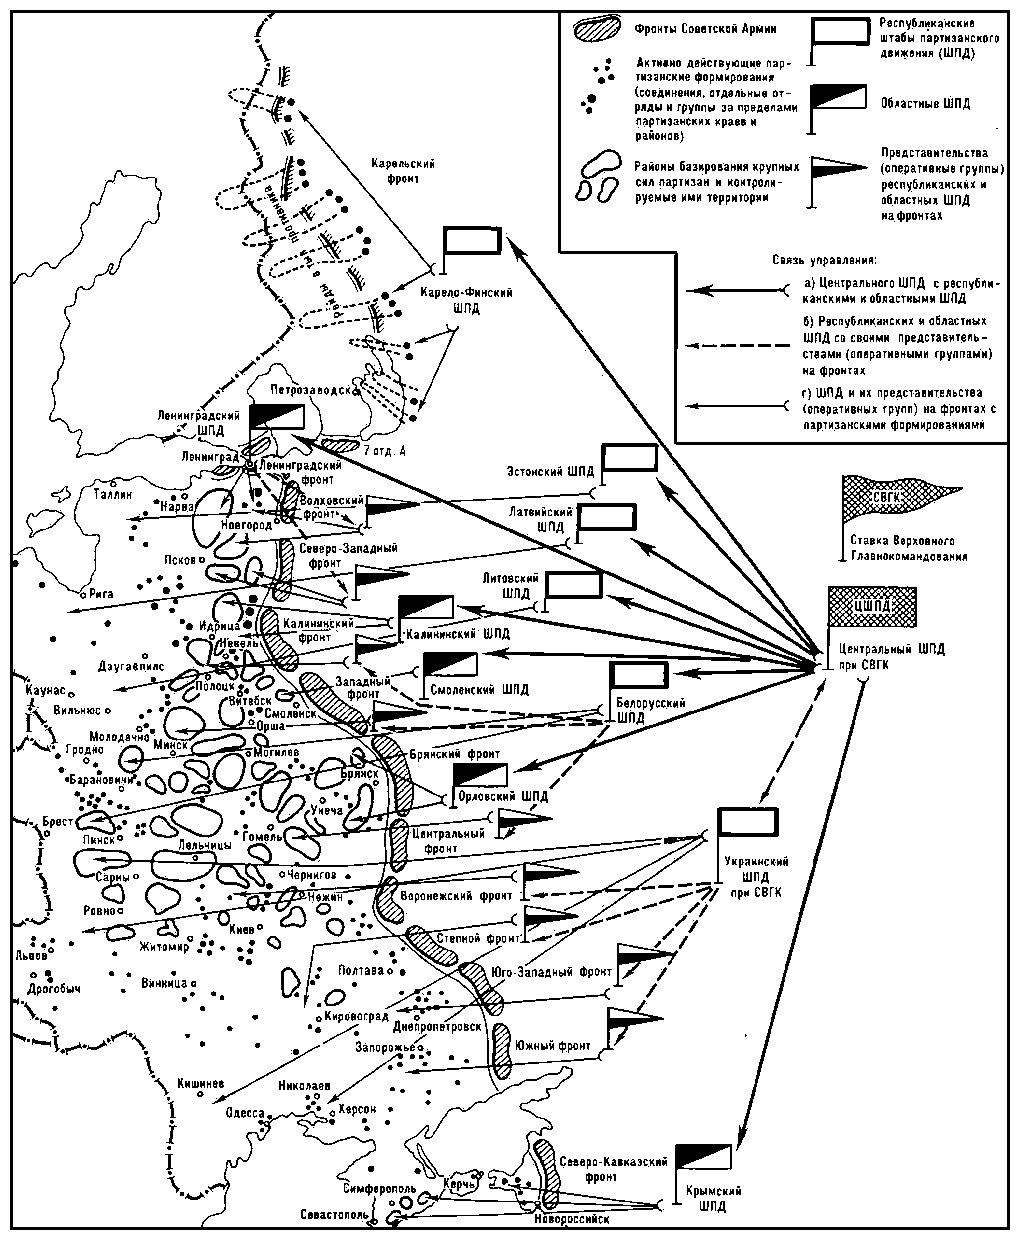 Структура управления партизанскими силами (на сентябрь 1943).